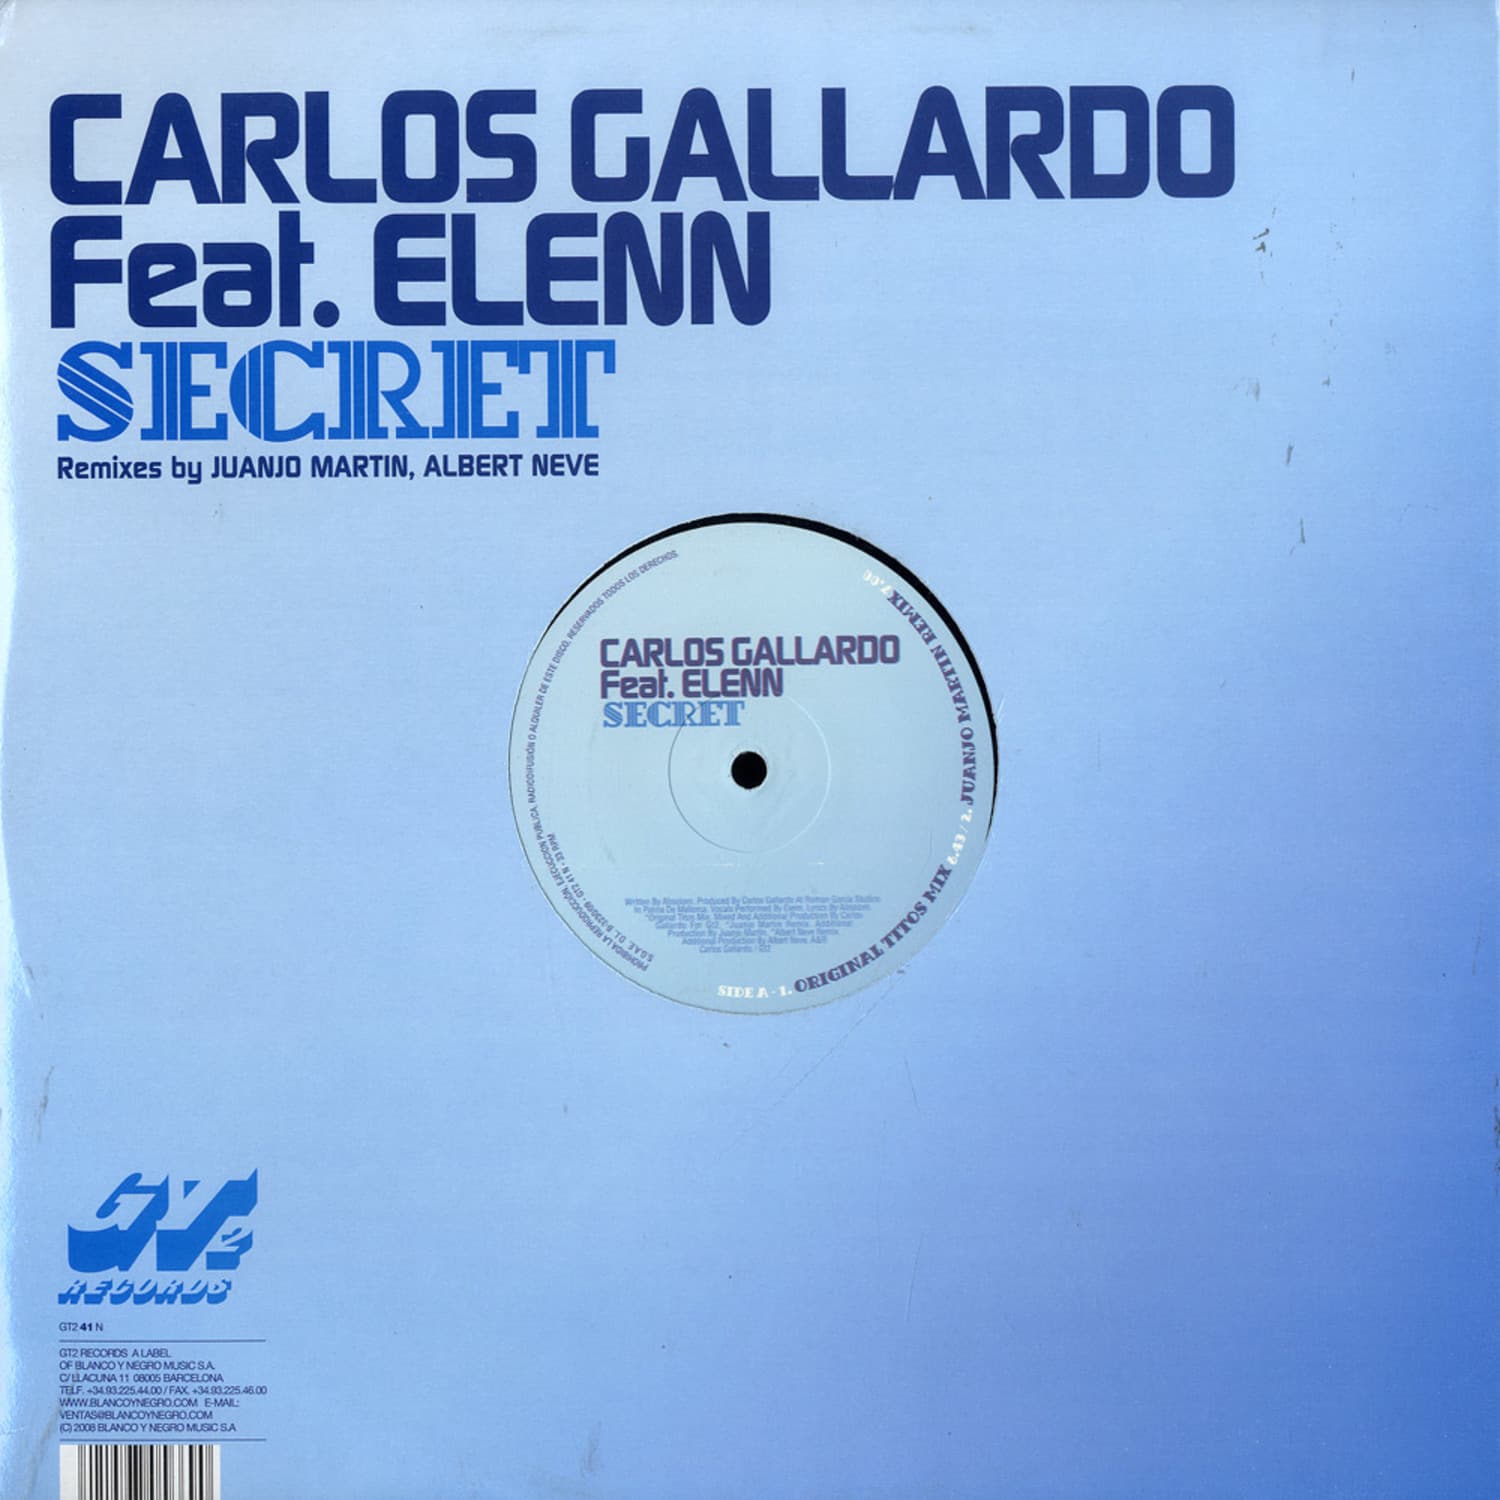 Carlos Gallardo featuring Elenn - SECRET